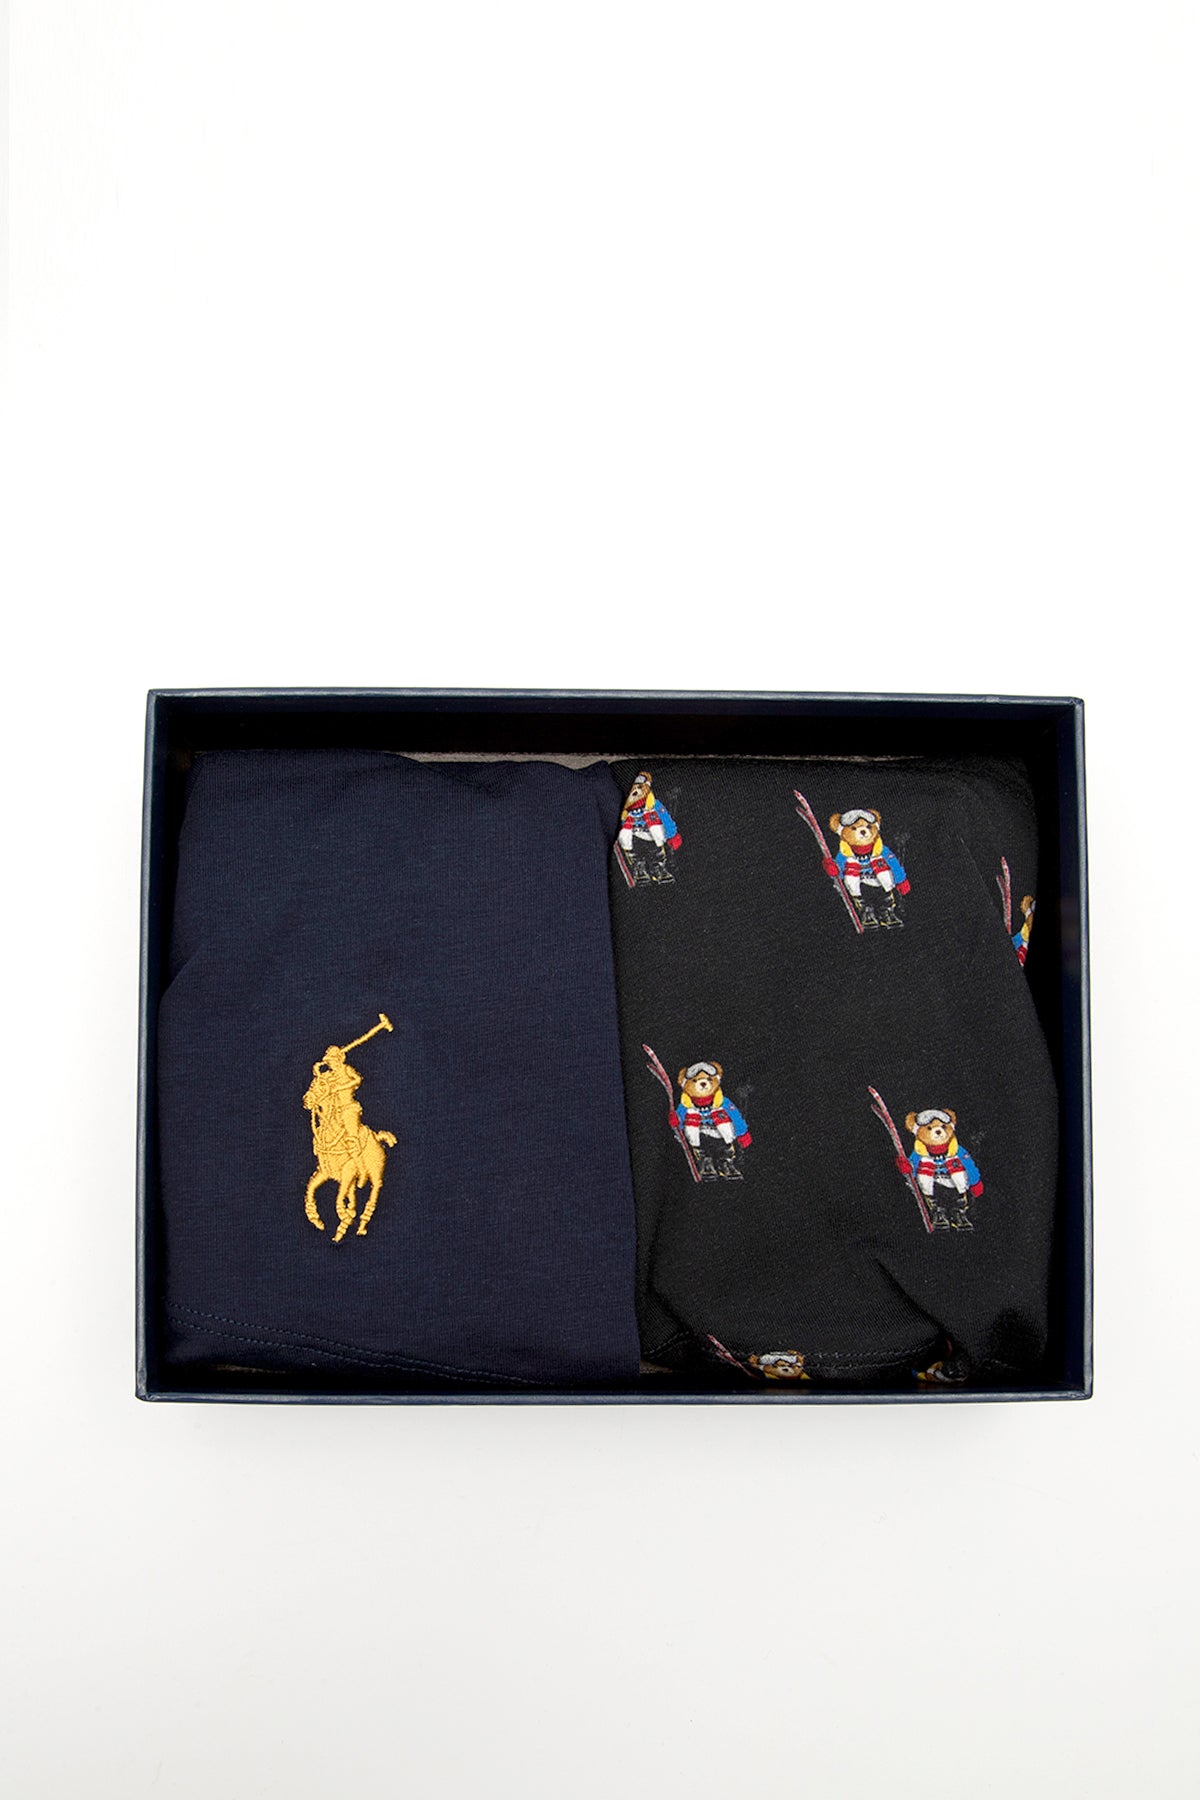 Polo Ralph Lauren 2'li Paket Polo Bear Streç Pamuklu Boxer-Libas Trendy Fashion Store